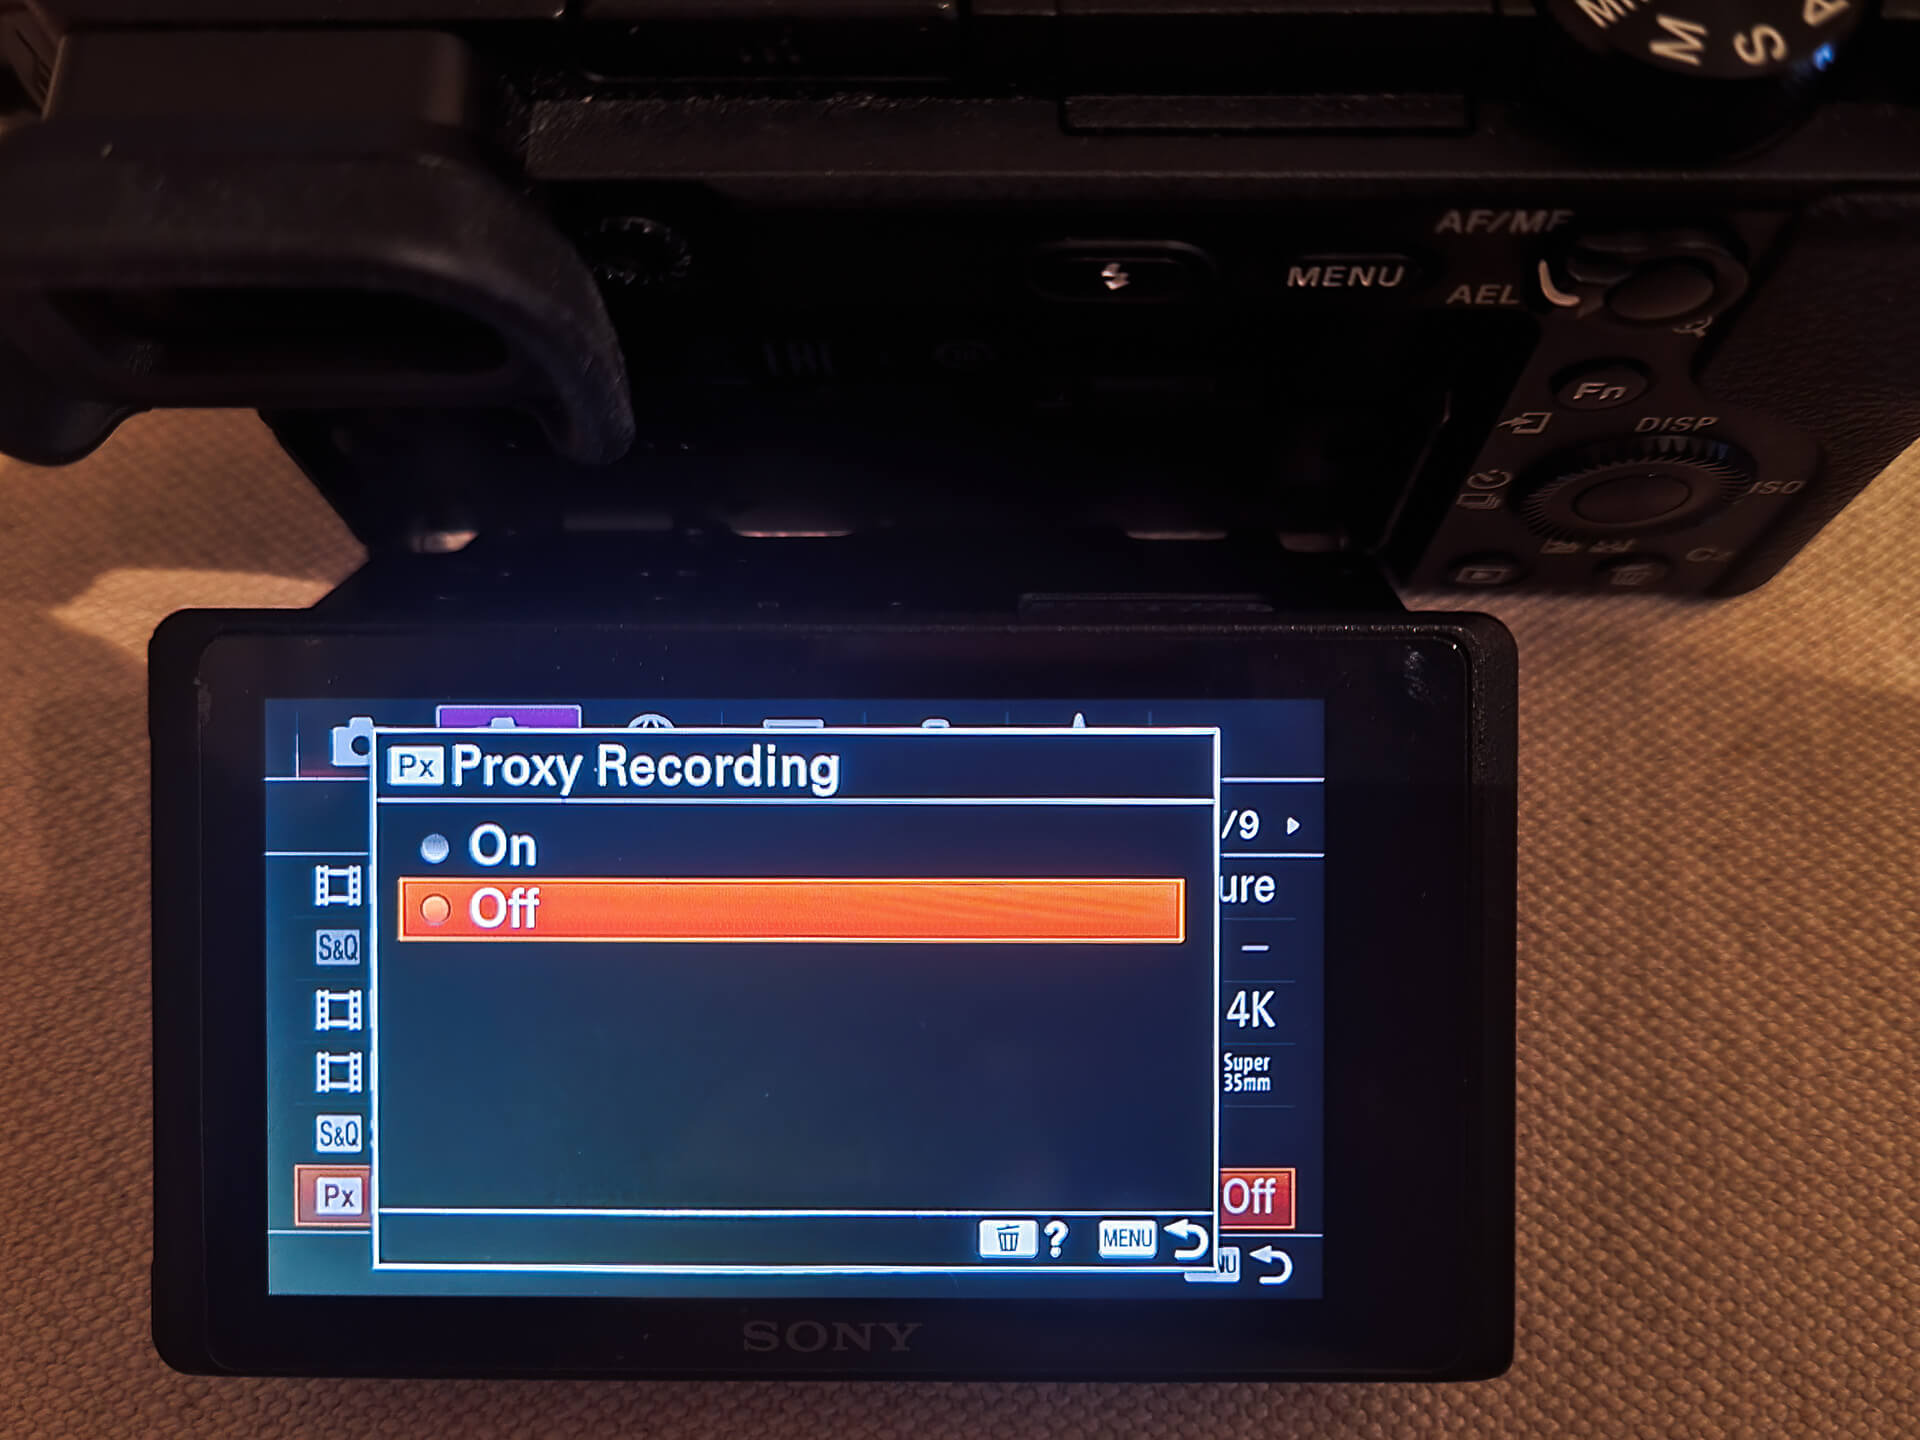 Proxy recording